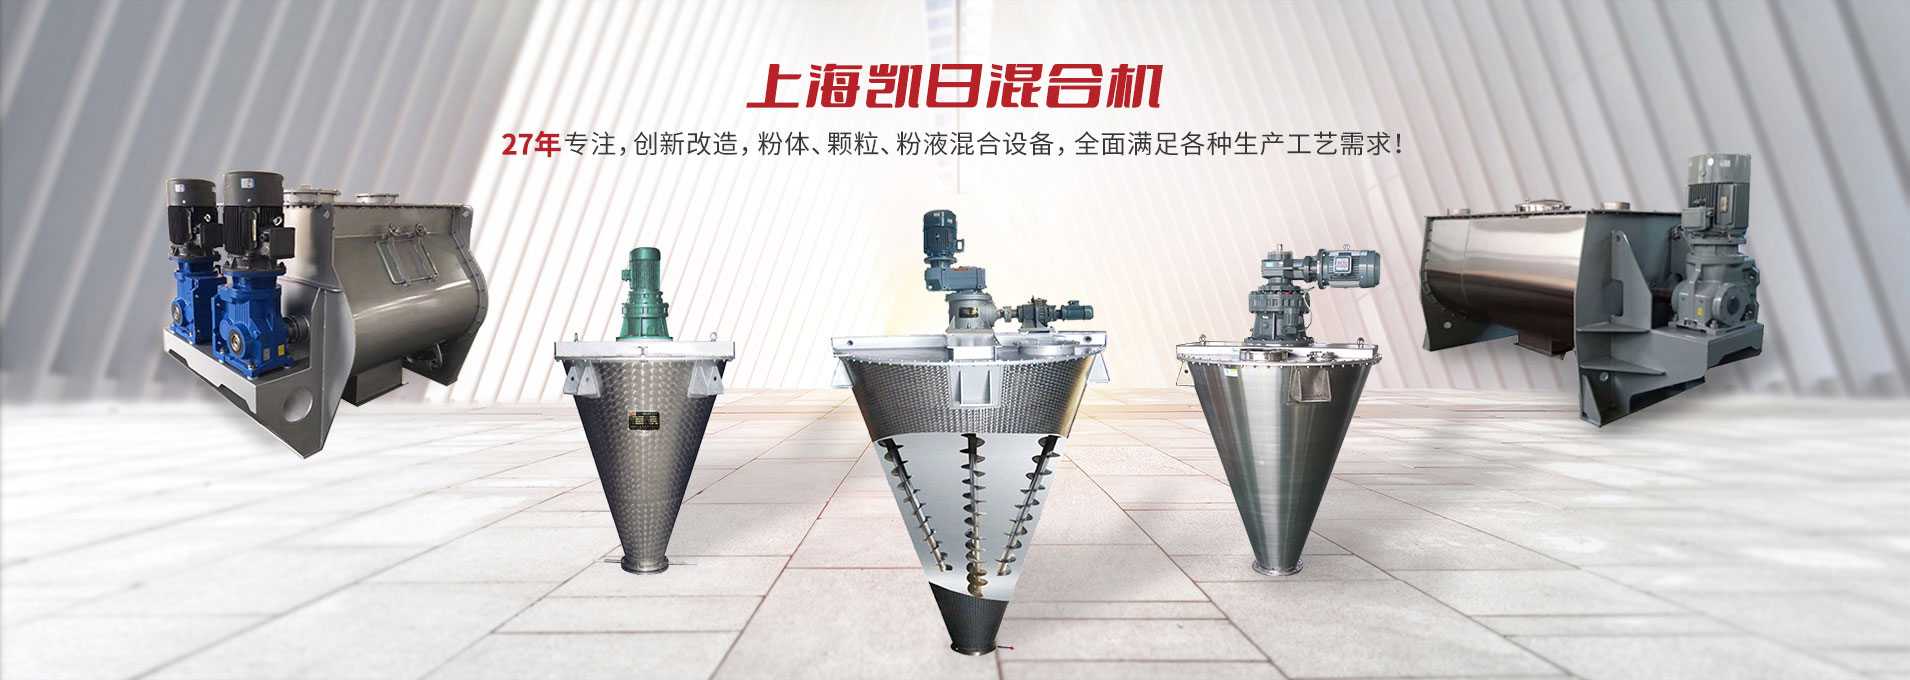 上海天博中国专注生产双/三螺旋锥形混合机、卧式螺带混合机、犁刀式合机、无重力混合机、螺带式锥形混合机、连续式混合机、混料机、搅拌机等产品。